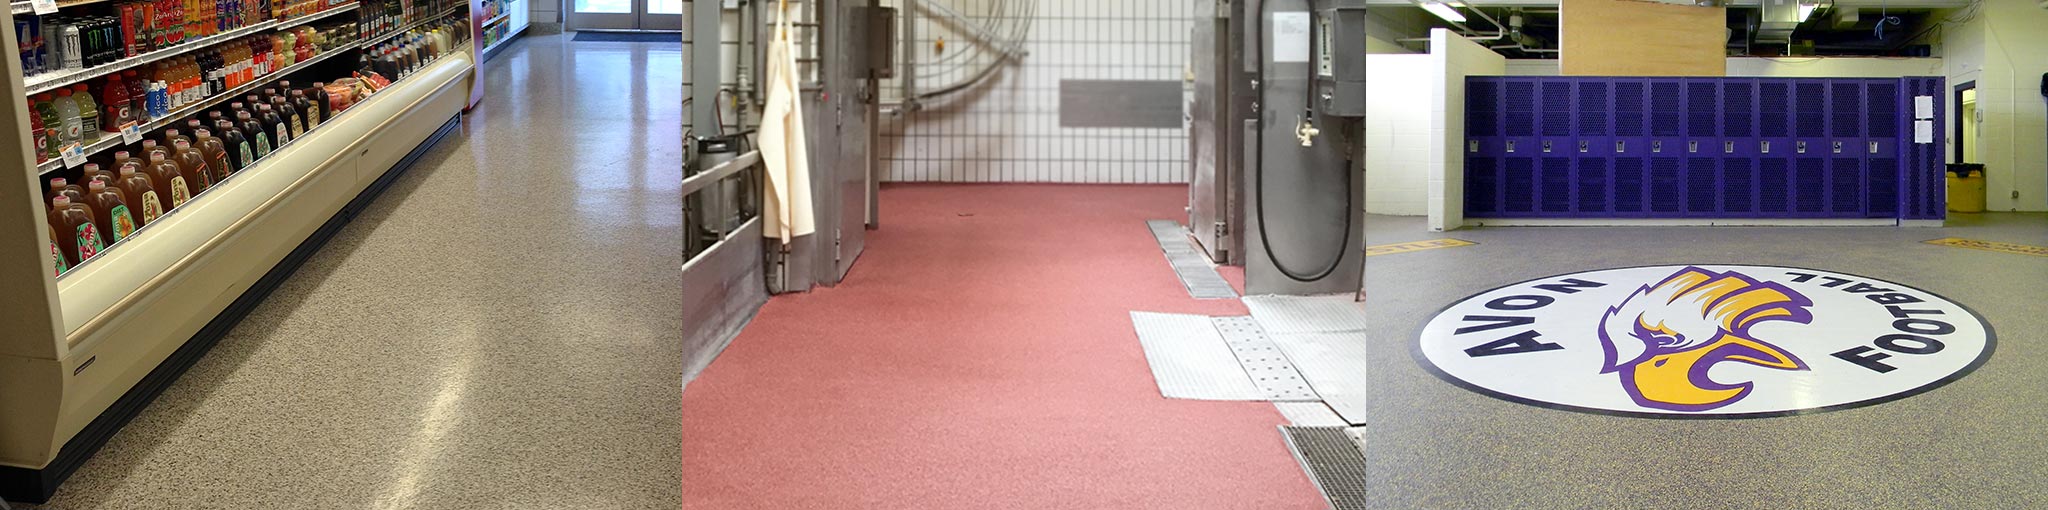 Kwortz UMC | Decorative Quartz Urethane Concrete Floor System